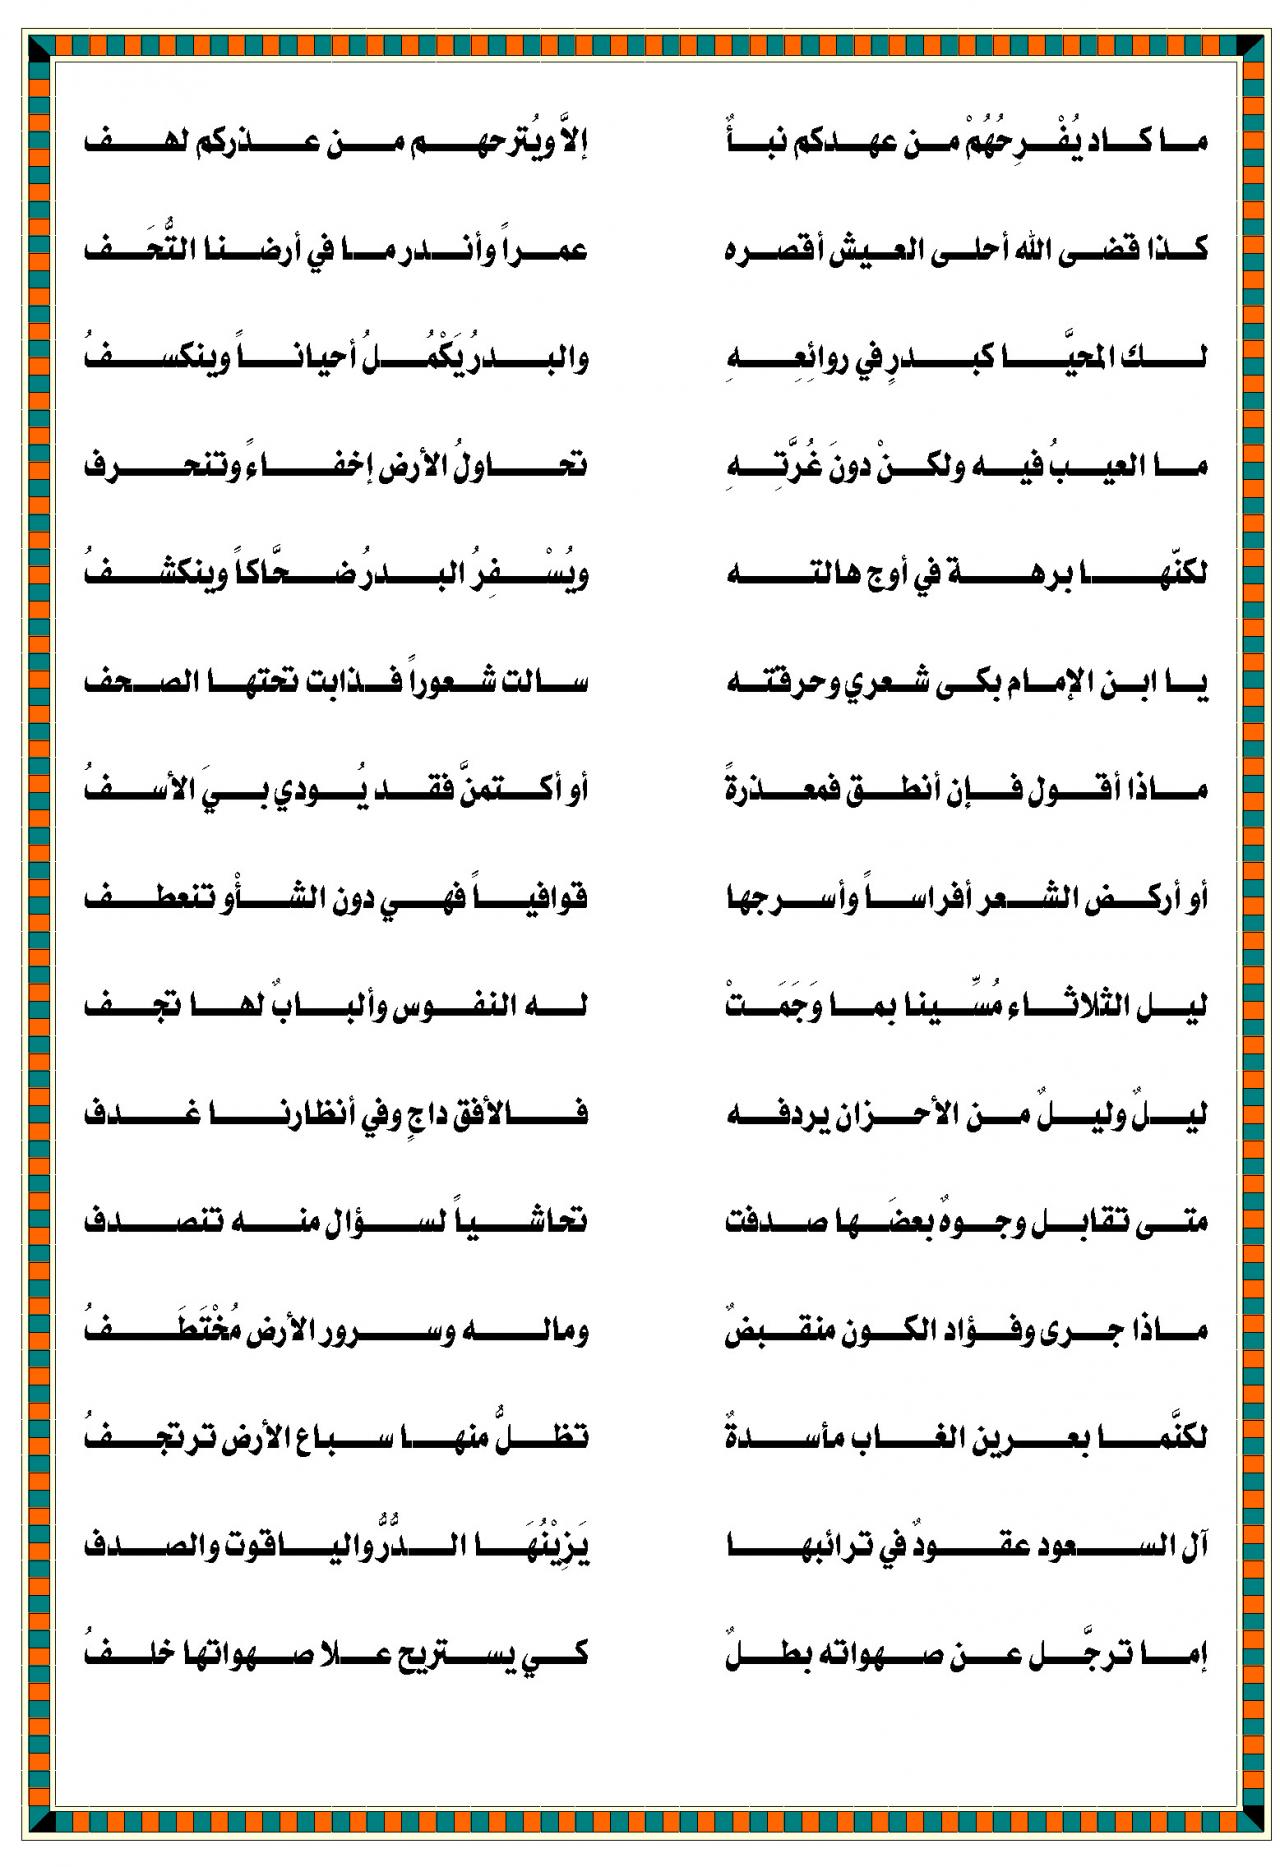 6920 3 قصيدة مدح باسم محمد، قصائد رائعة لمدح النبي نوره